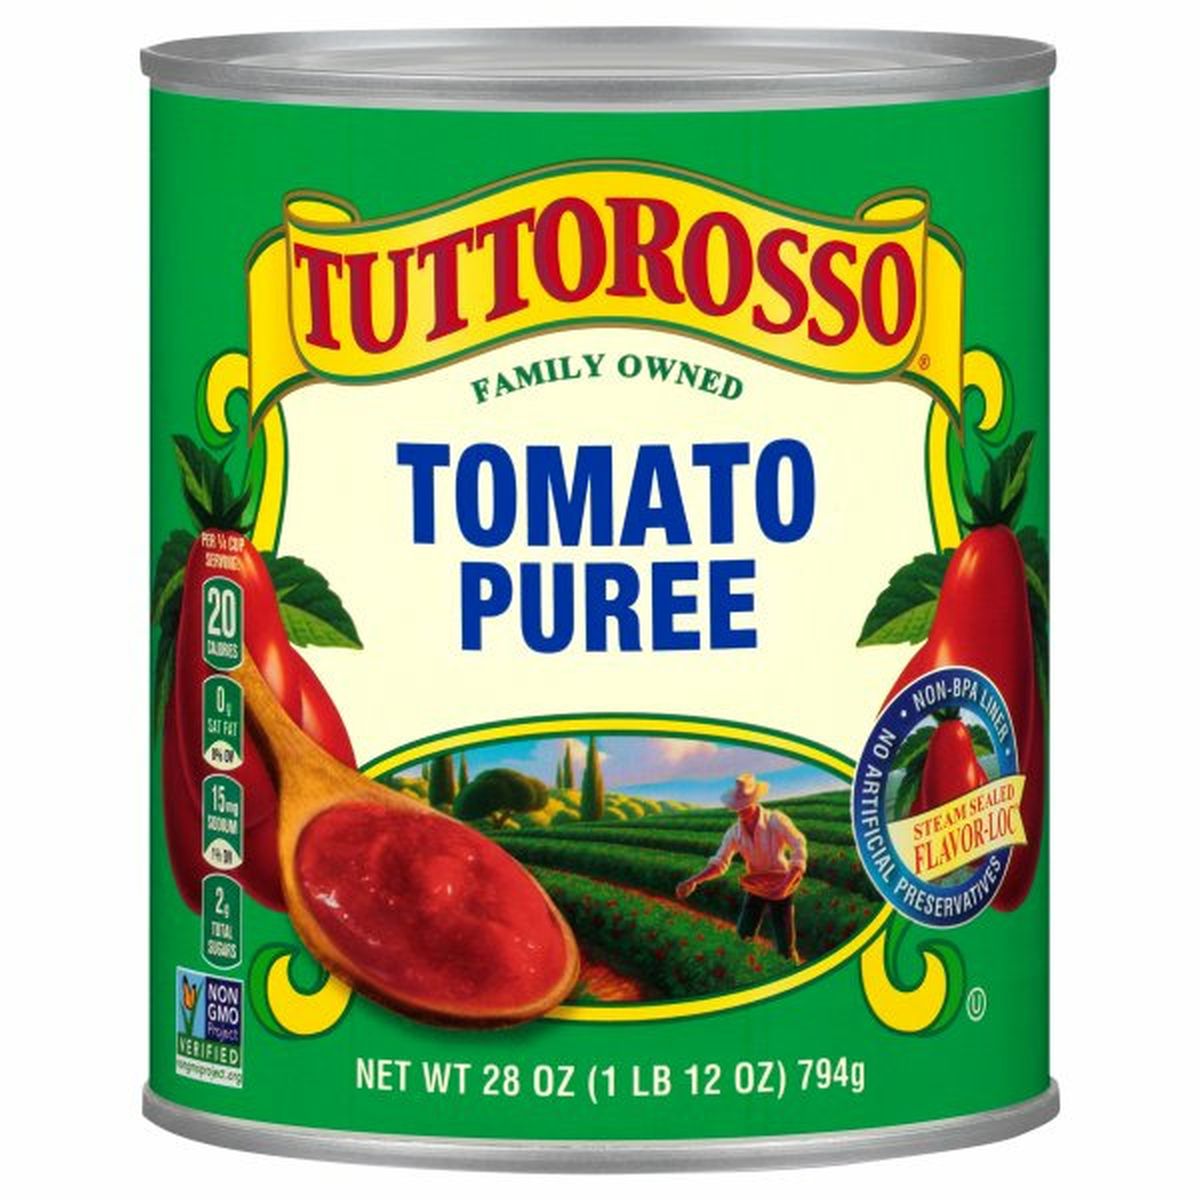 Calories in Tuttorosso Tomatoes Tomato Puree